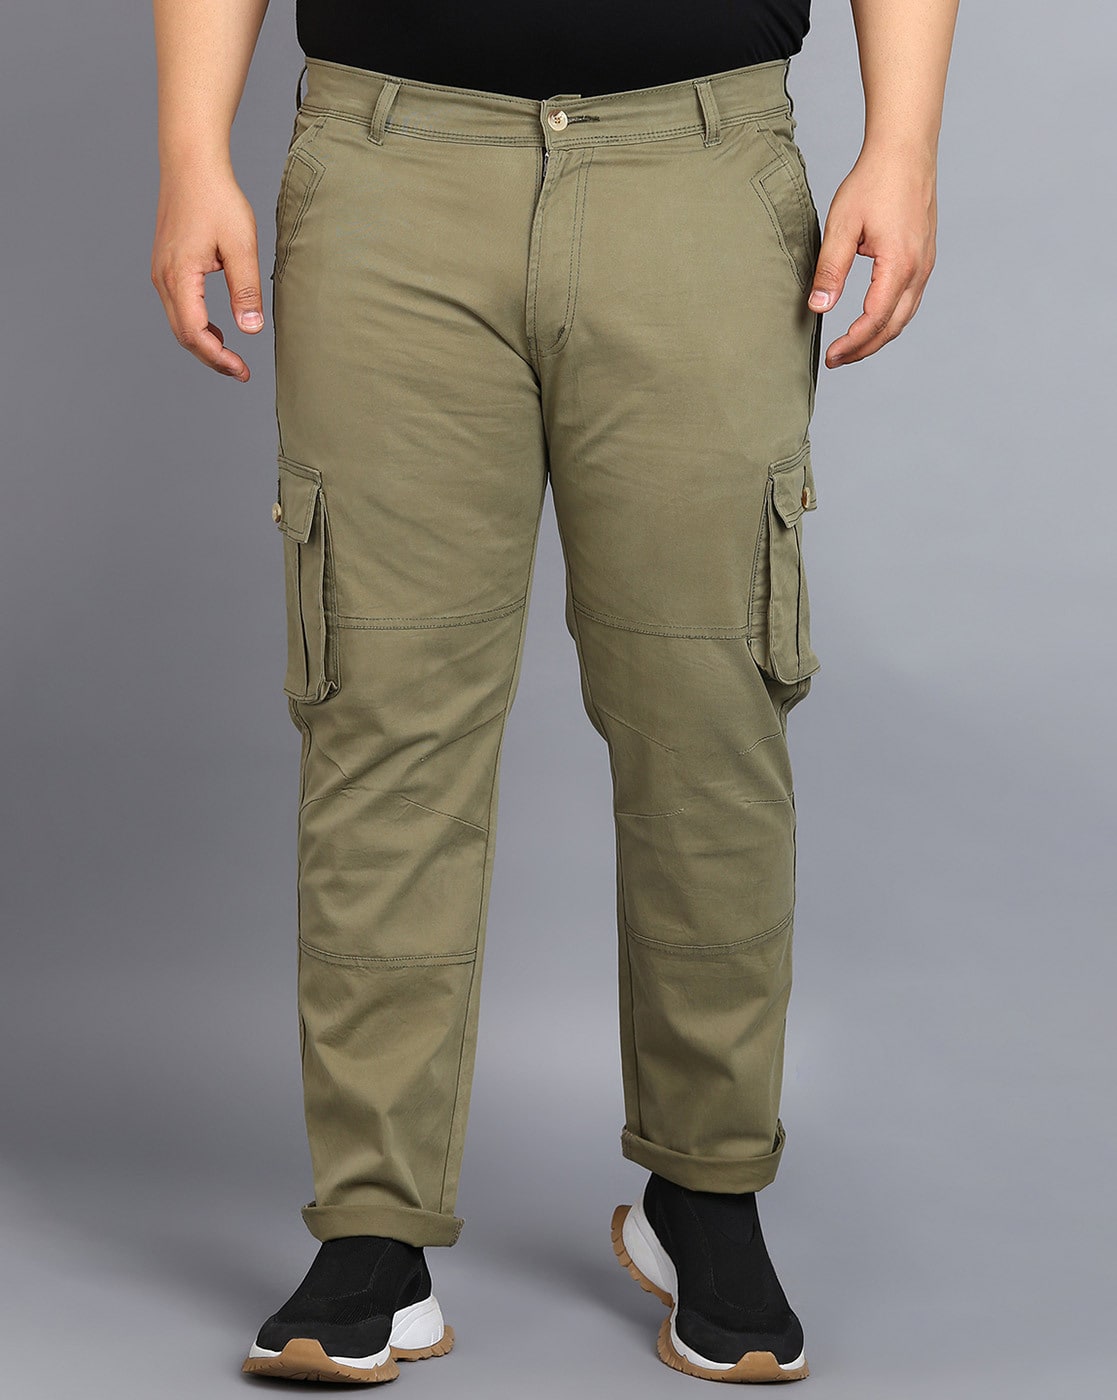 Buy Beige Trousers & Pants for Men by ECKO UNLTD Online | Ajio.com